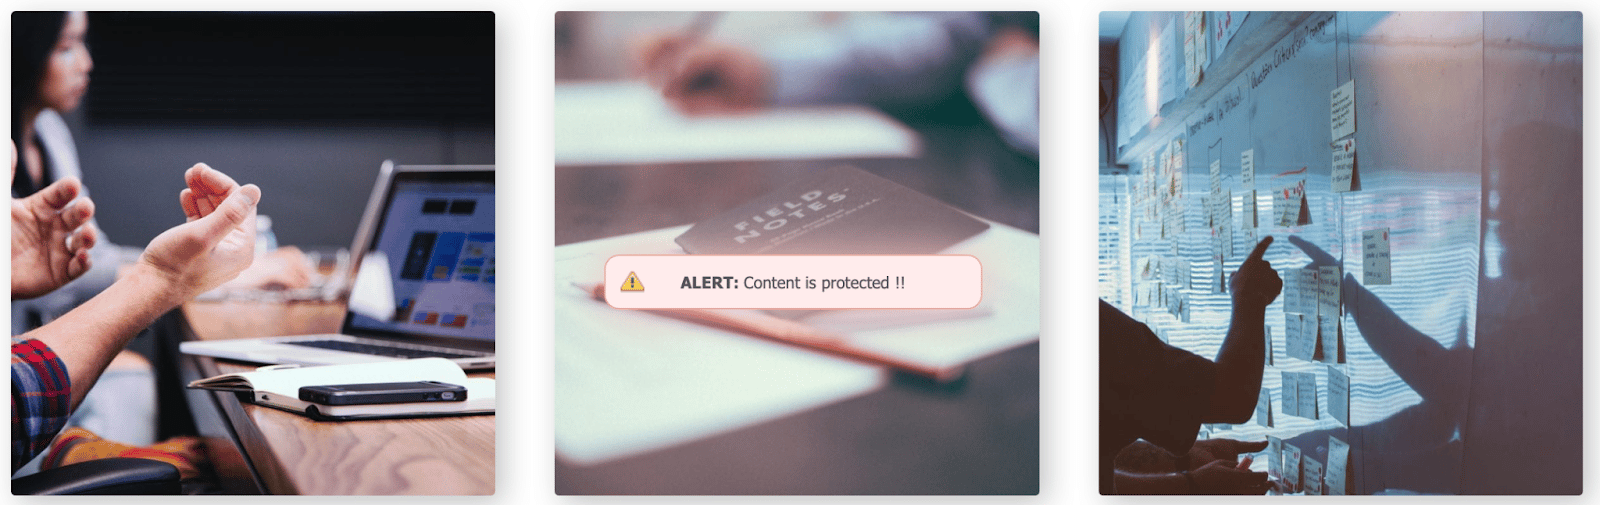 Mensaje de advertencia que aparece cuando se desactiva el clic derecho con el plugin de protección anticopia